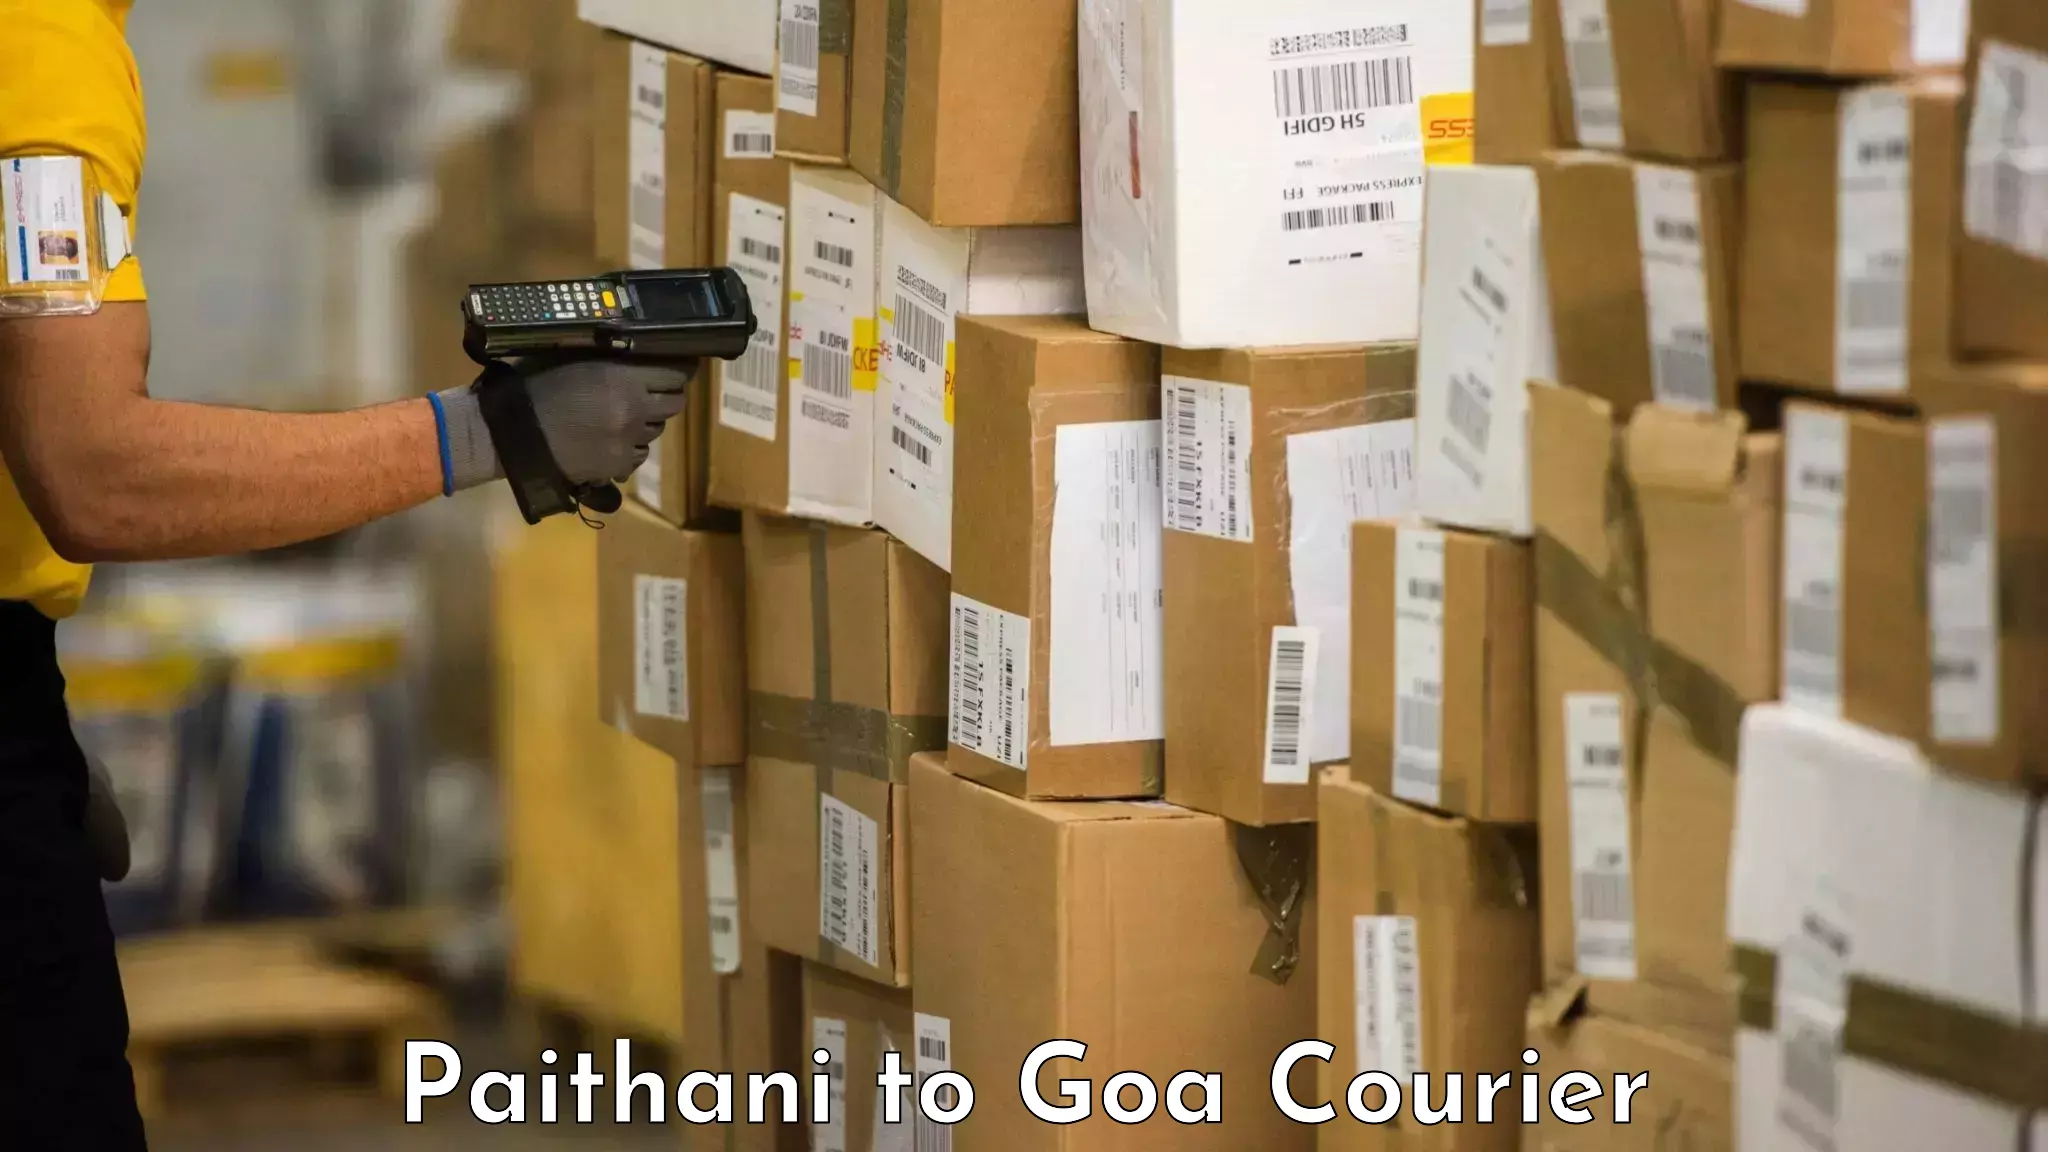 Door-to-door baggage service Paithani to Goa